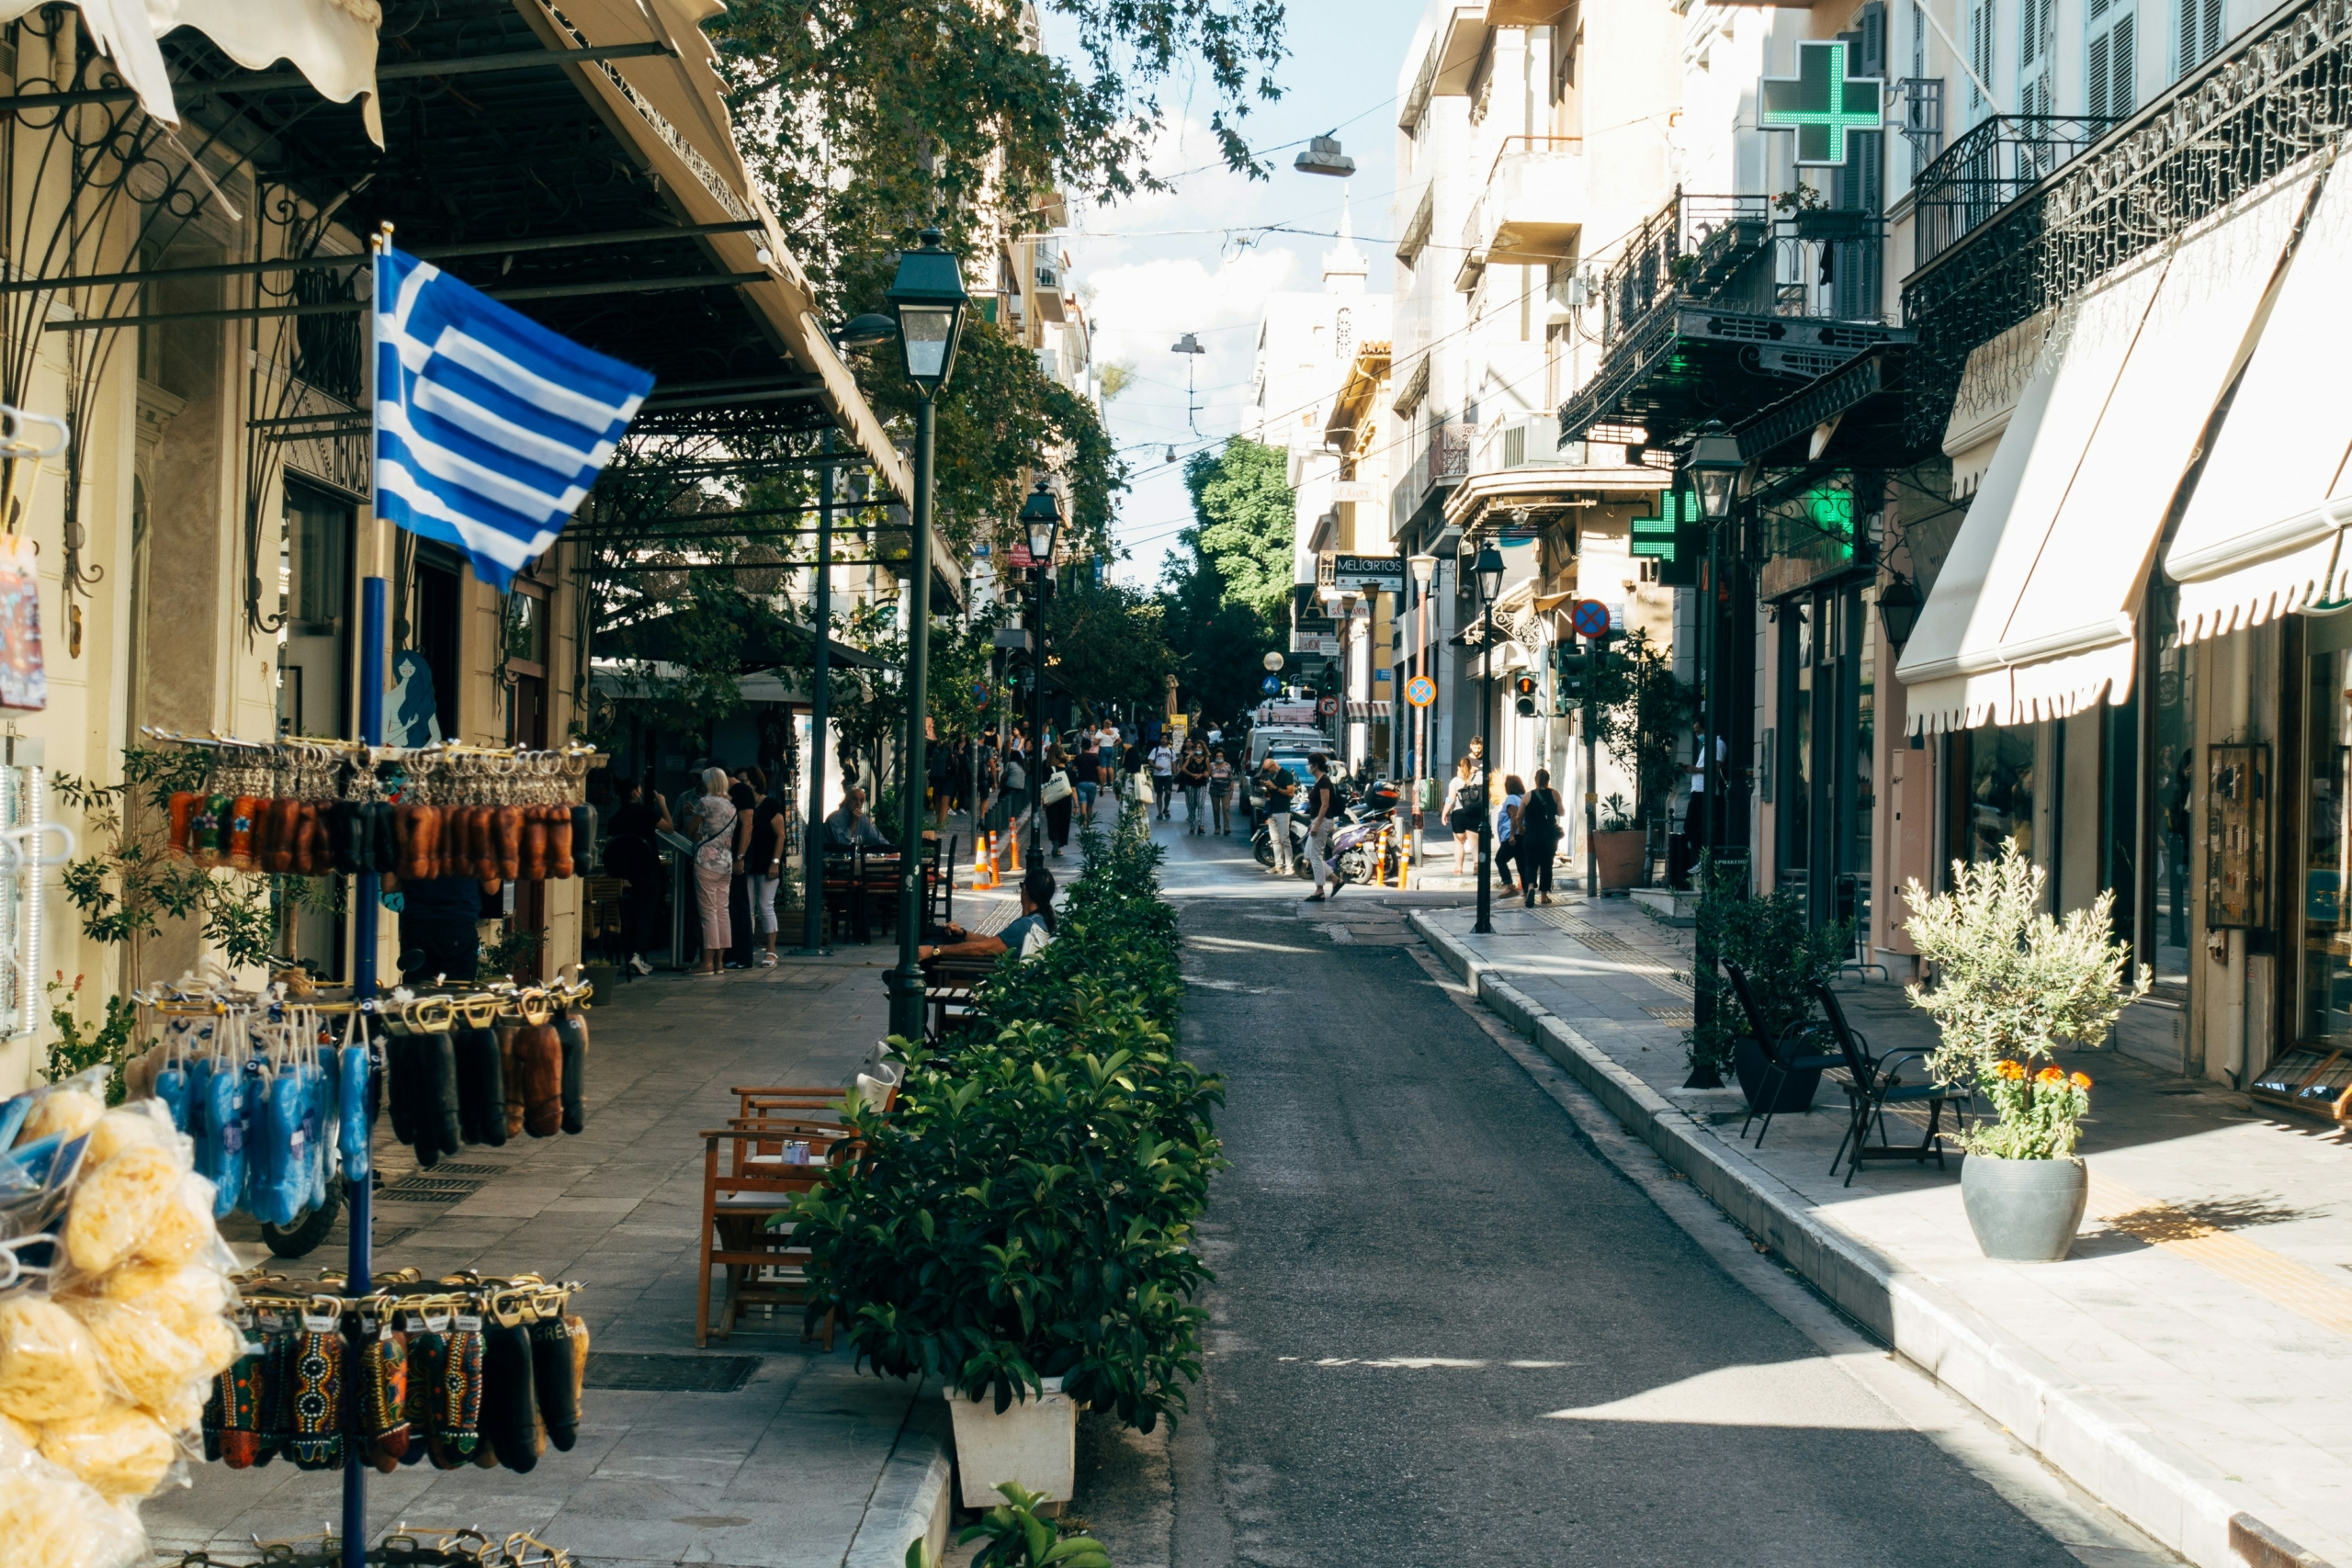 Atene, Grecia